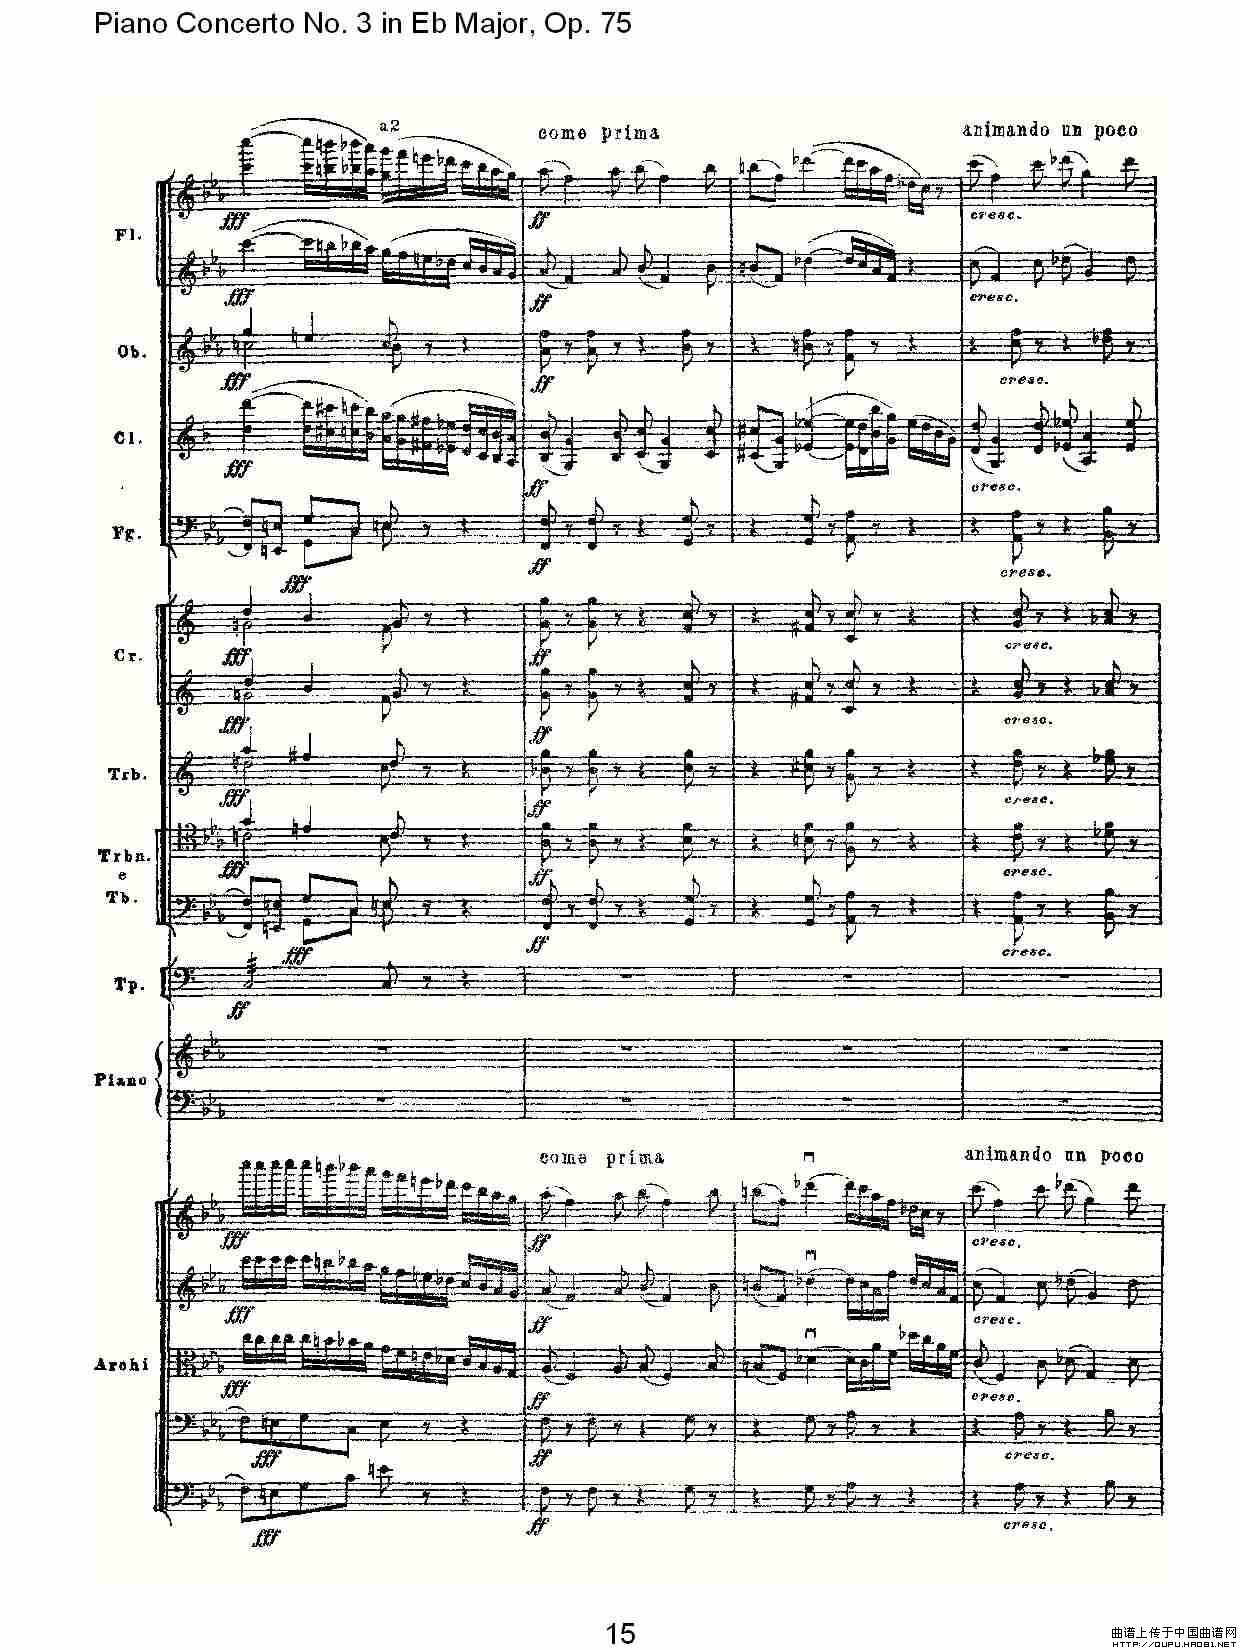 Piano Concerto No.3 in Eb Major, Op.75（Eb大调第三钢琴协奏）(1)_原文件名：Piano Concerto No.3 in Eb Major, Op.7515.jpg